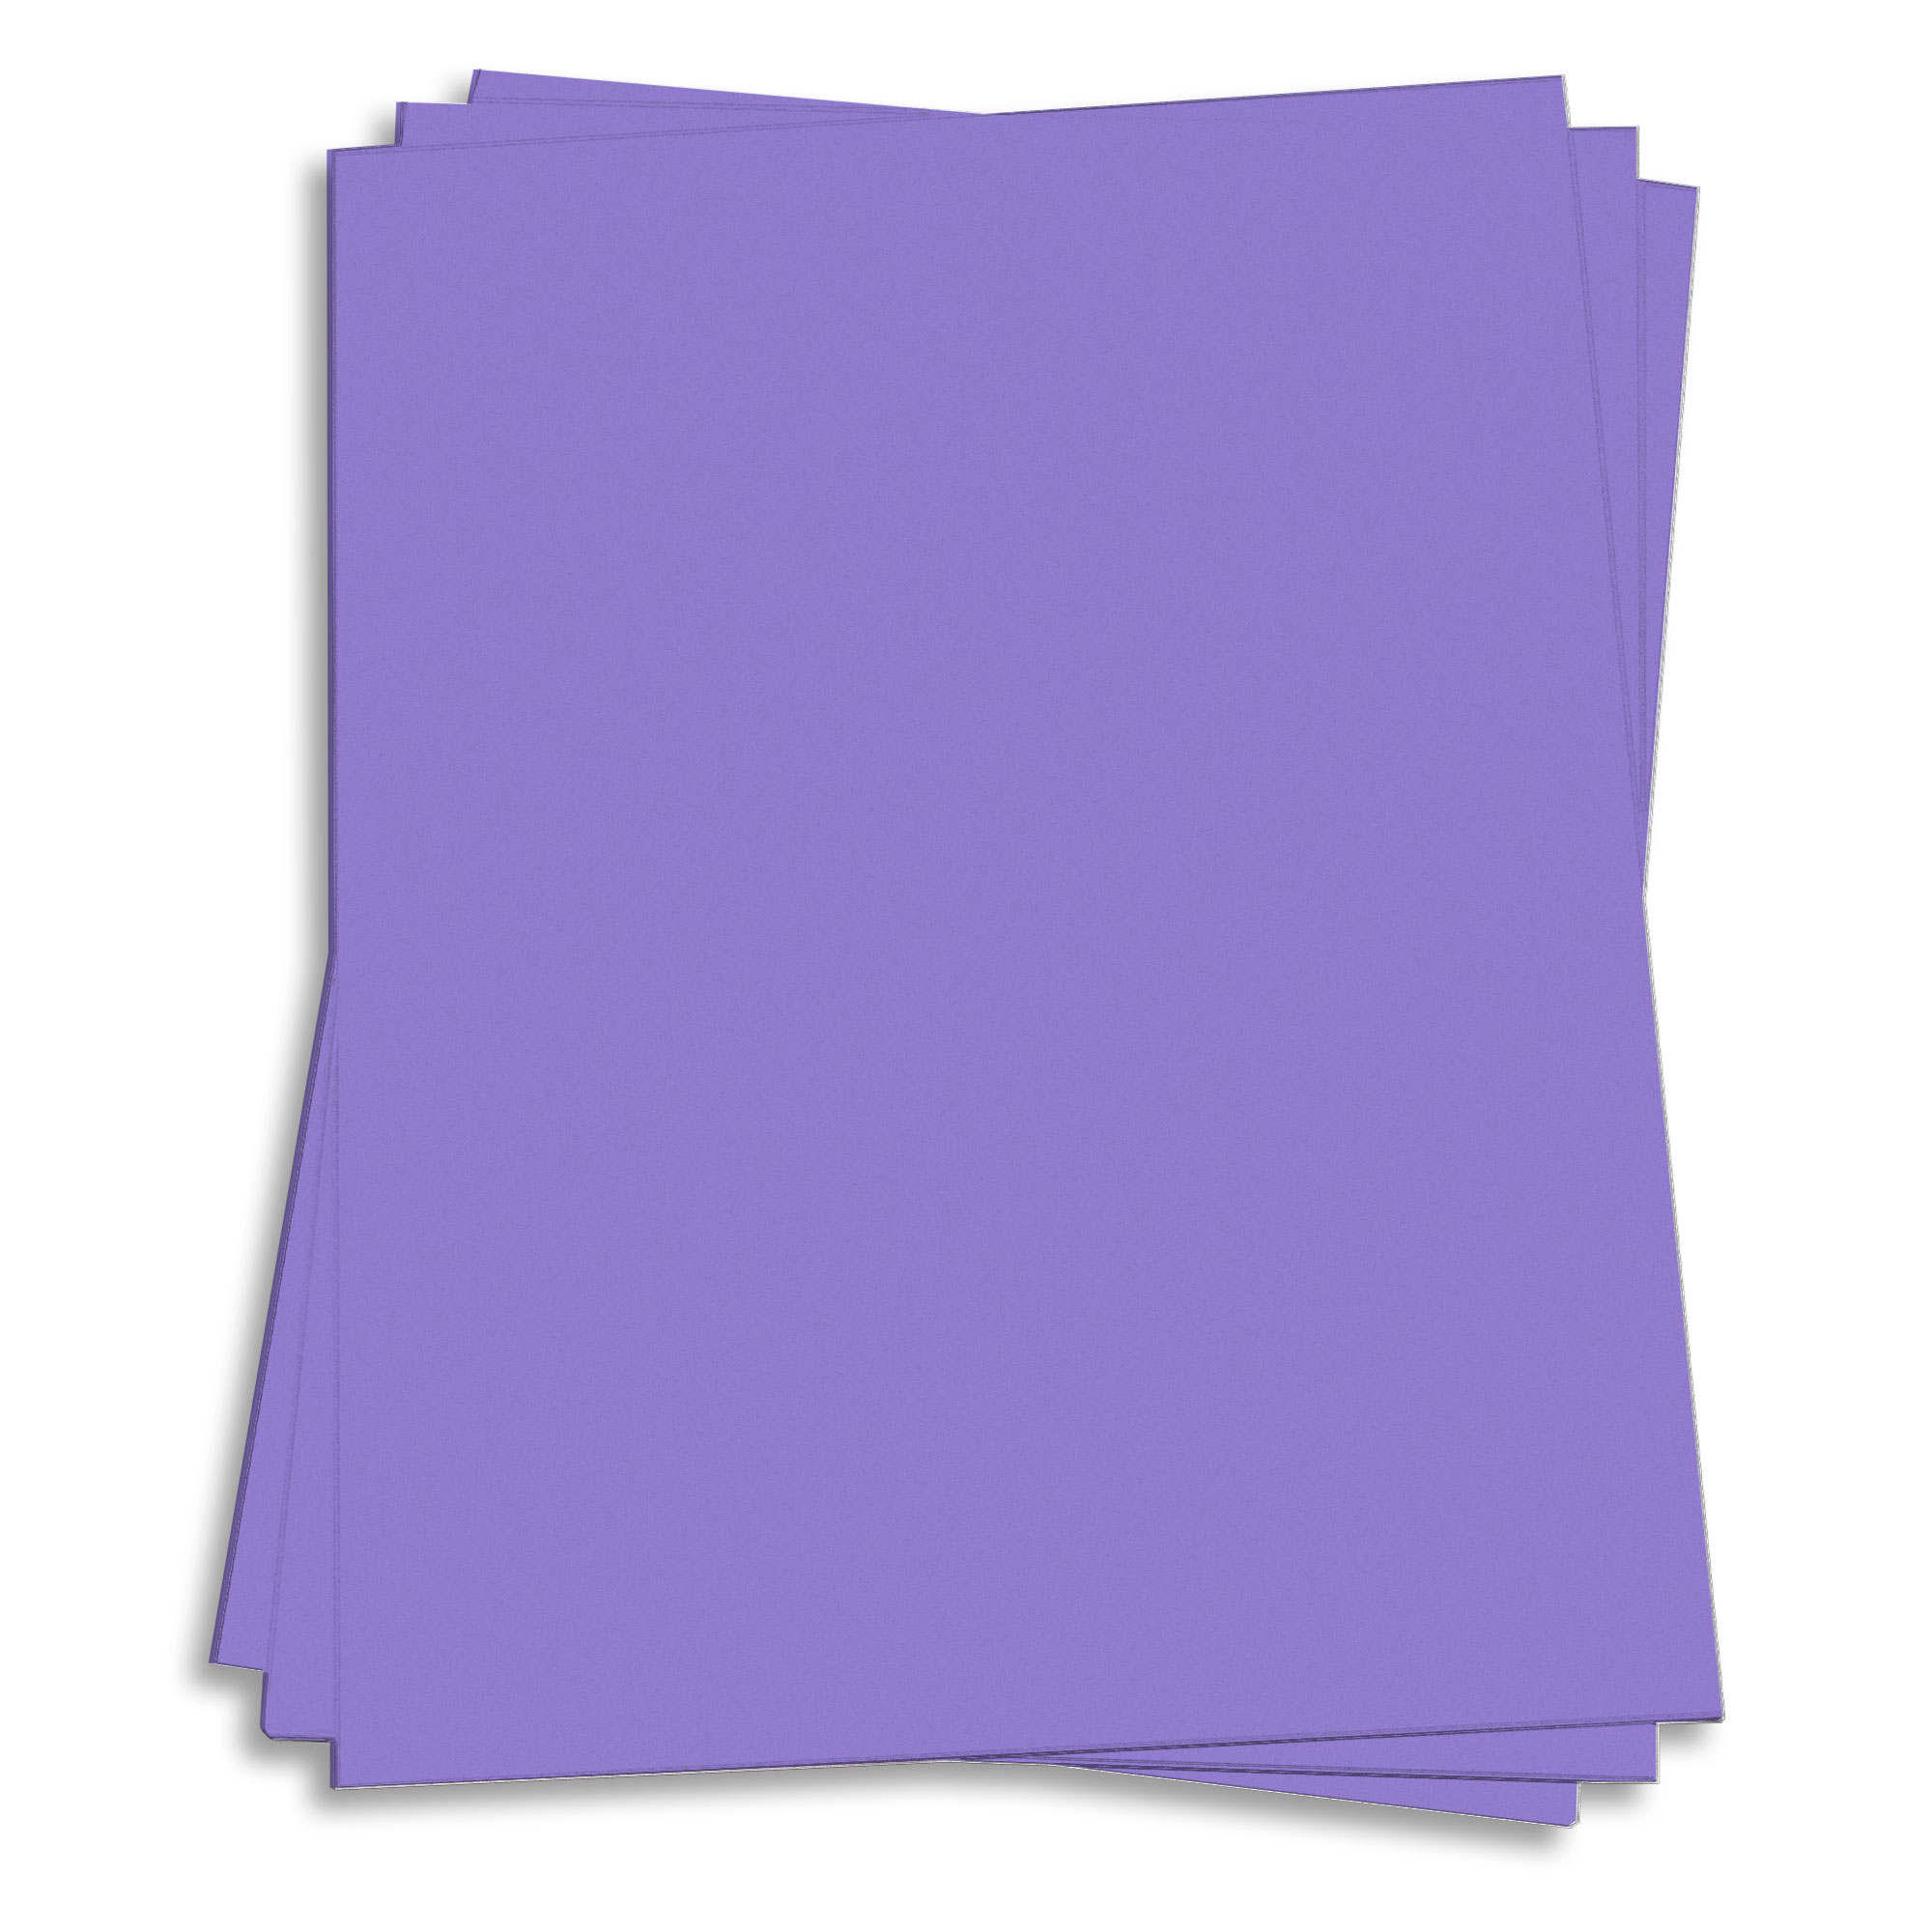 Venus Violet Purple Paper - 8 1/2 x 11 60lb Text